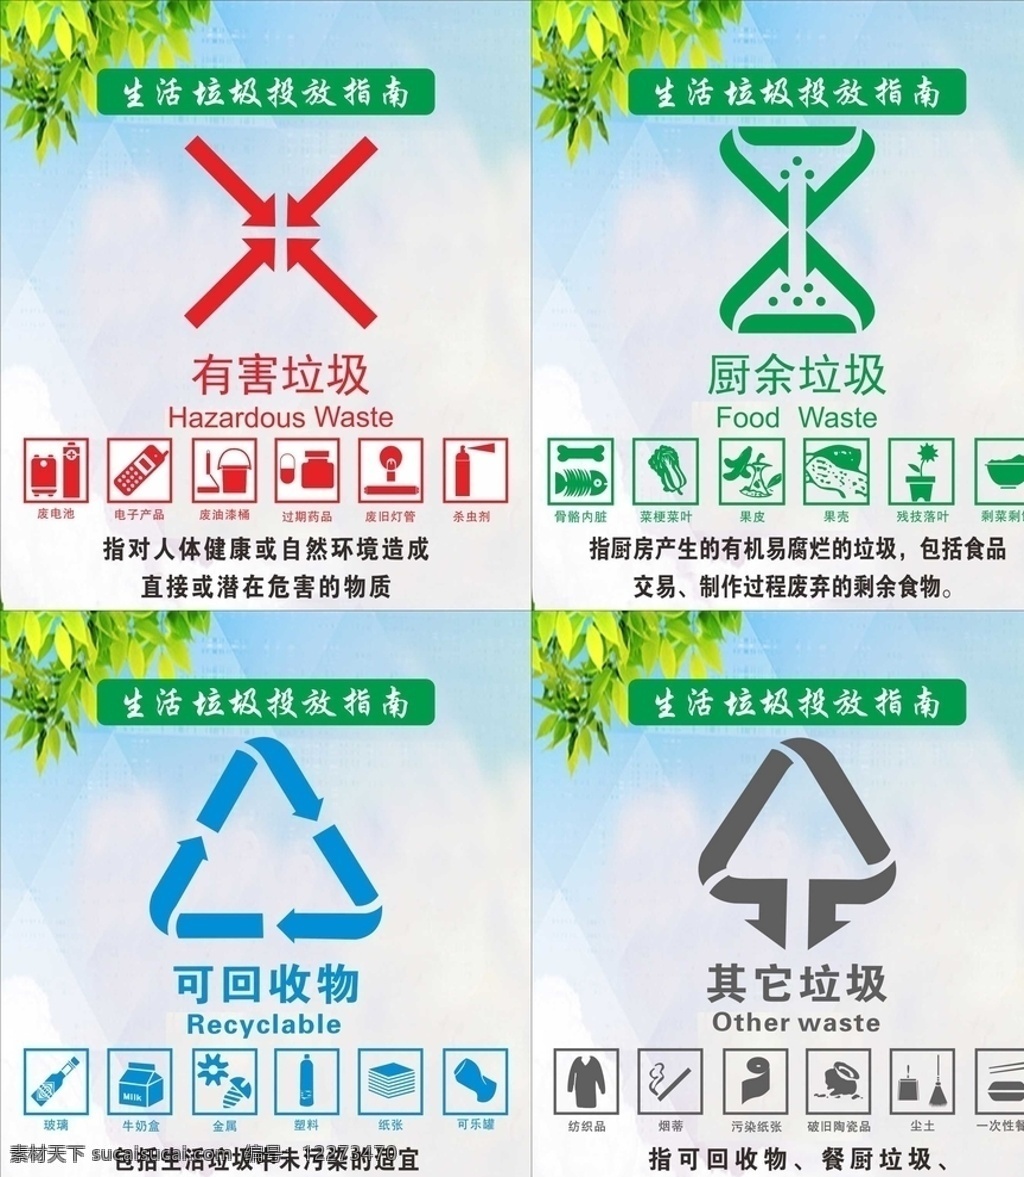 最新版 生活 垃圾 投放 指南 矢量图 垃圾分类 最新 垃圾投放 标志图标 公共标识标志